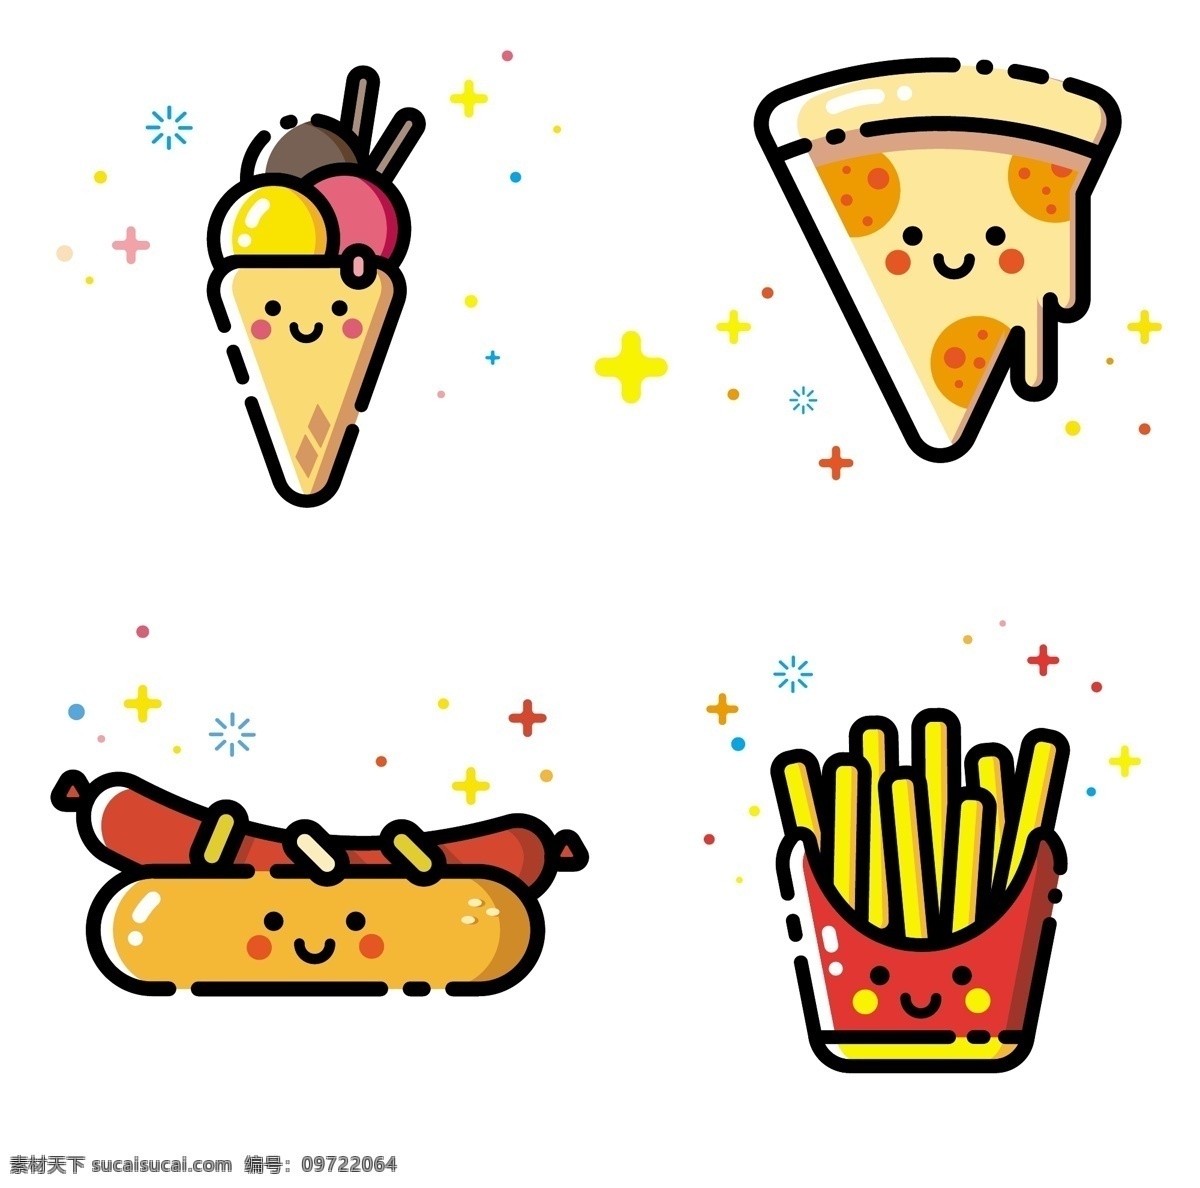 卡通美食图片 美食 元素 卡通 汉堡 冰淇淋 薯条 热狗 烤肠 设计元素 标志图标 其他图标